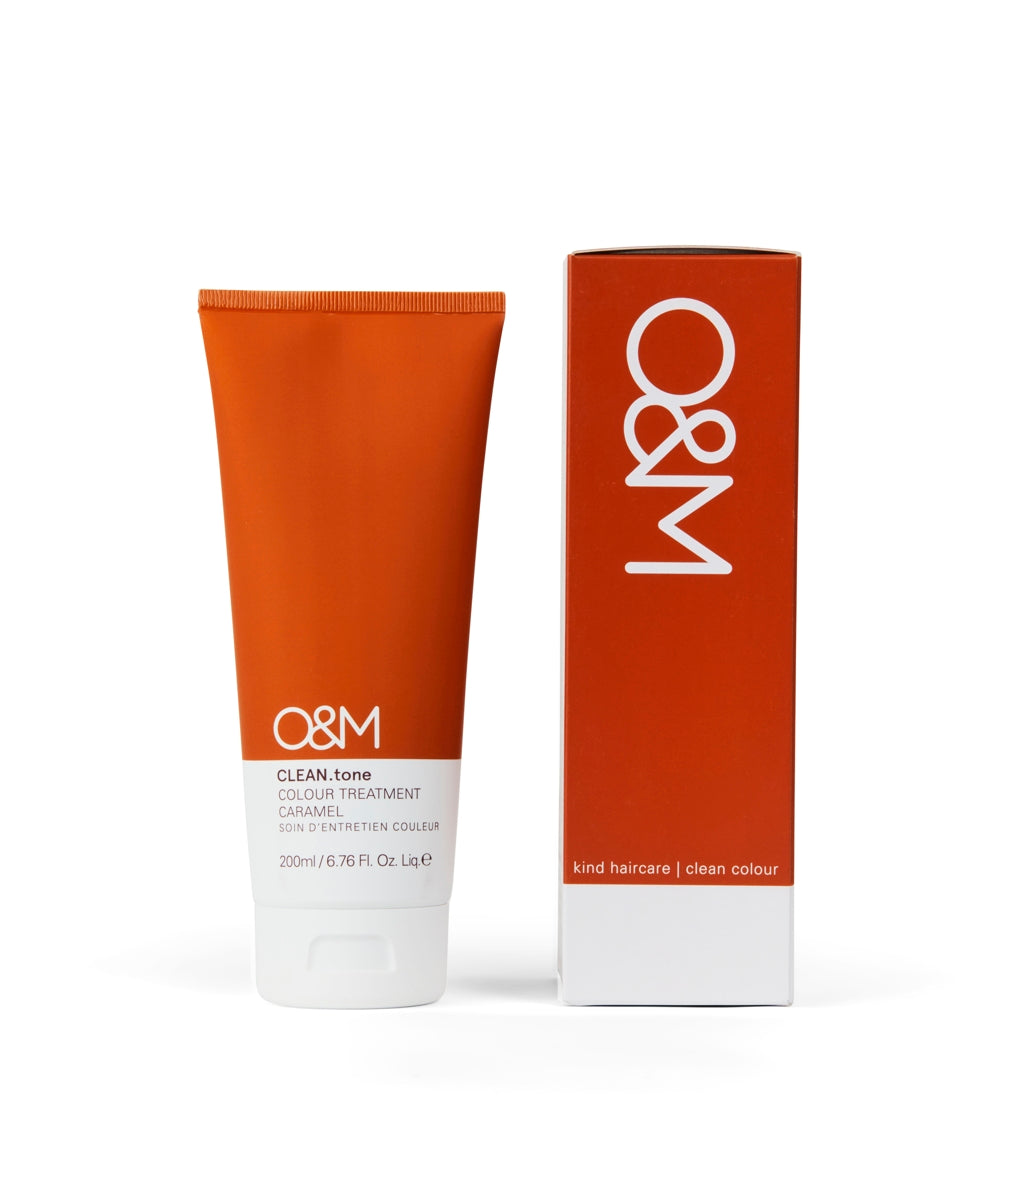 O&M CLEAN.tone Caramel Colour Treatment 200ml